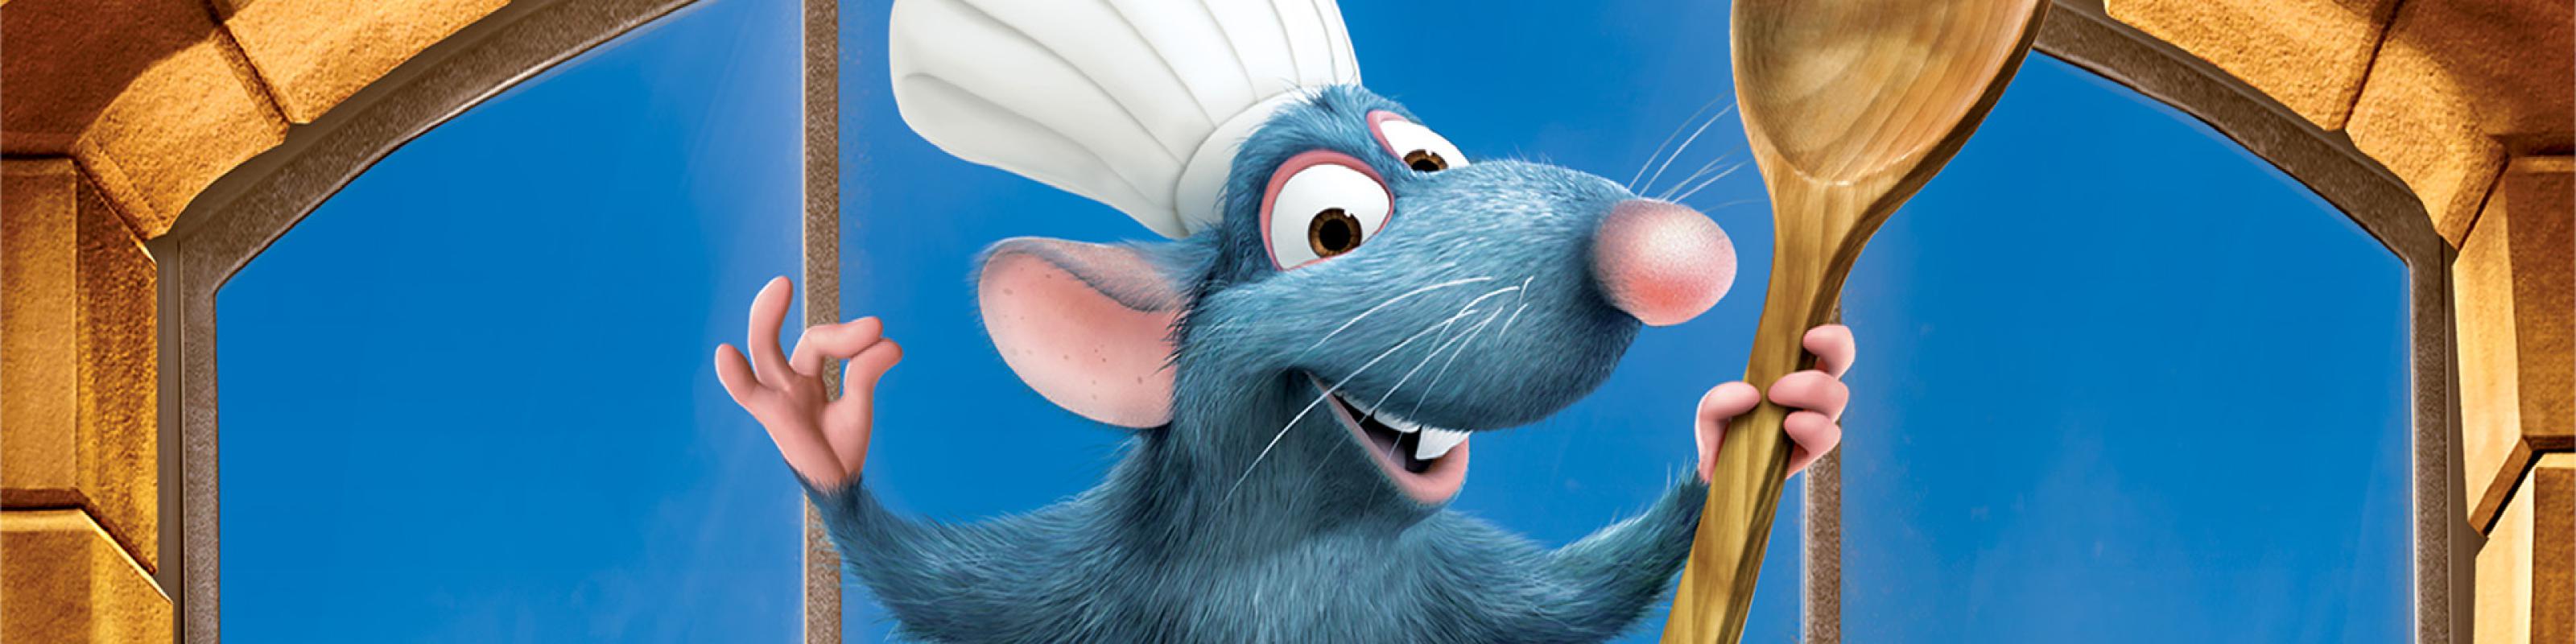 Disney 100: Ratatouille